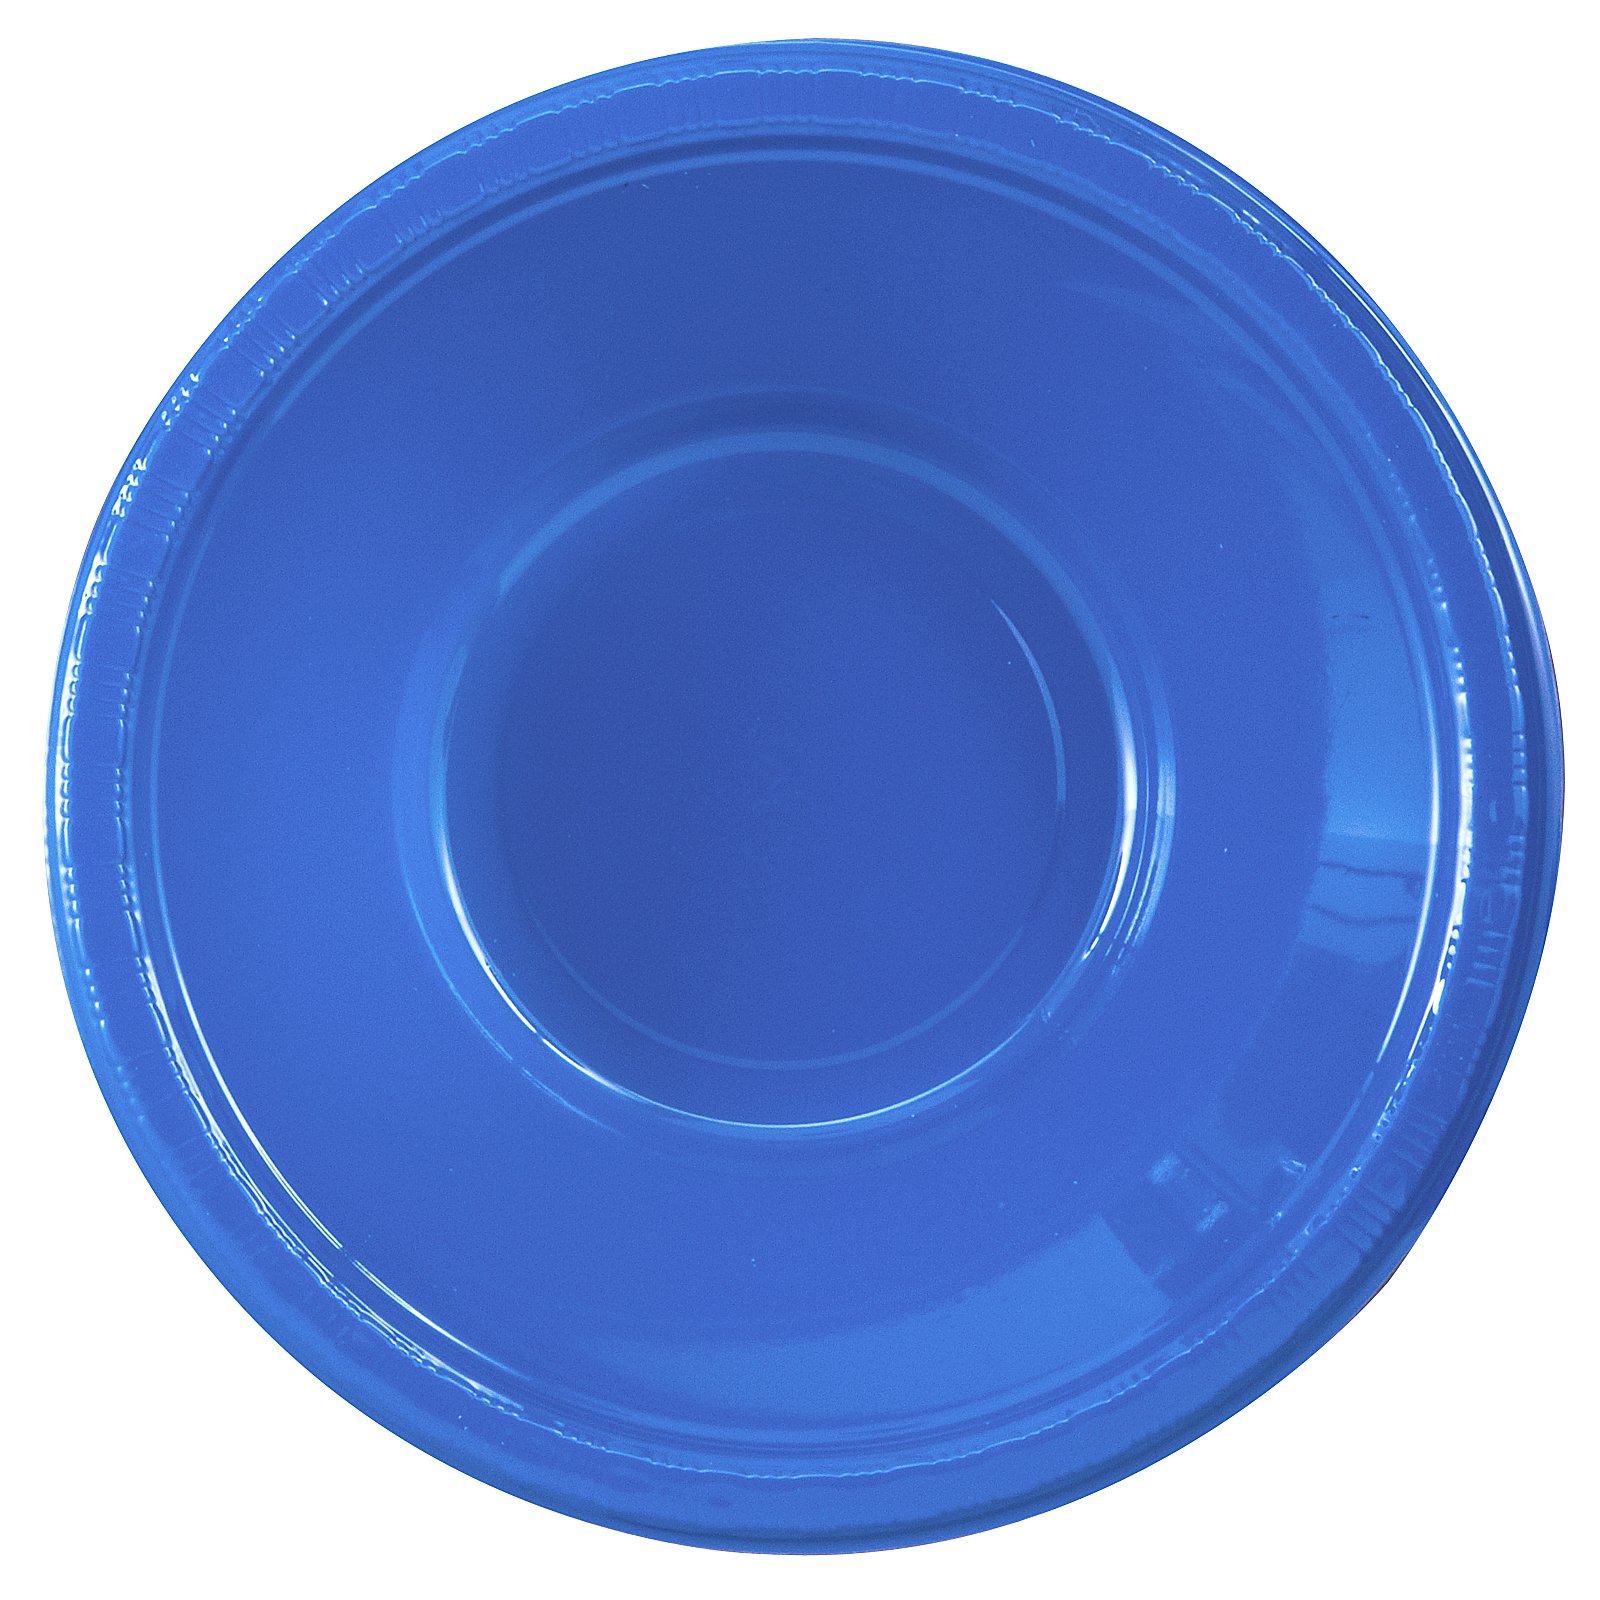 True Blue (Blue) Plastic Bowls (20 count)